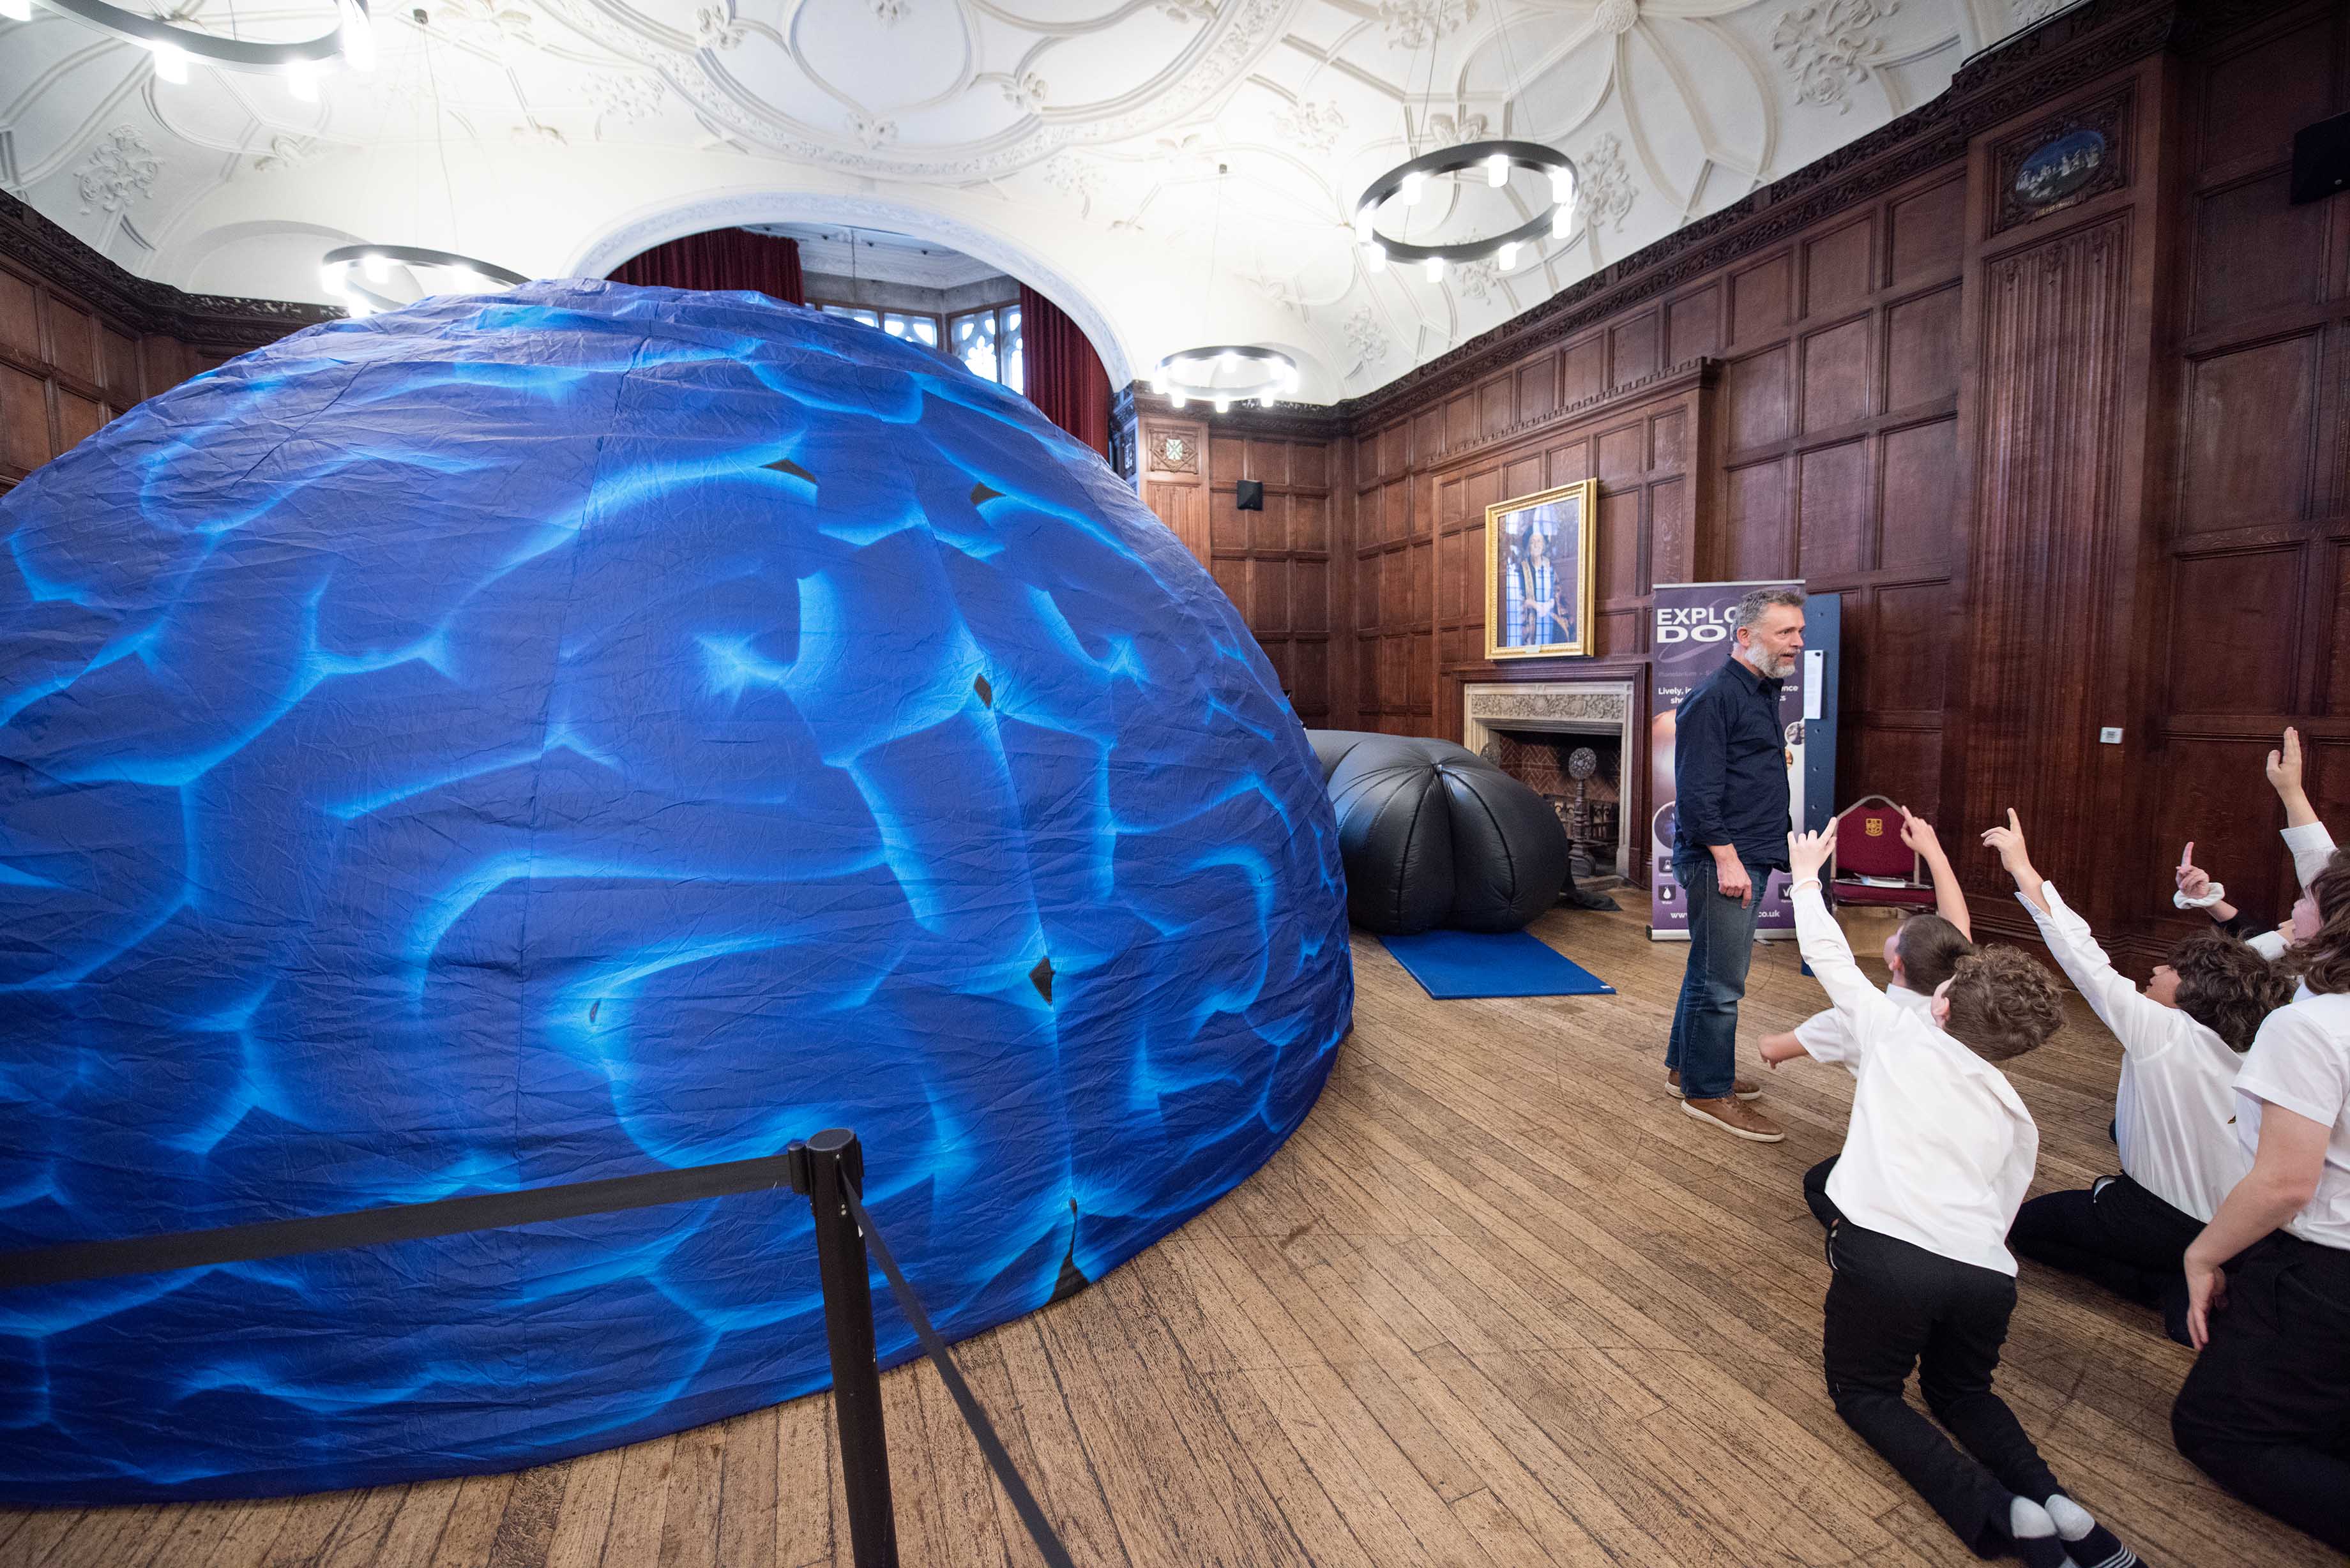 The Brain Dome